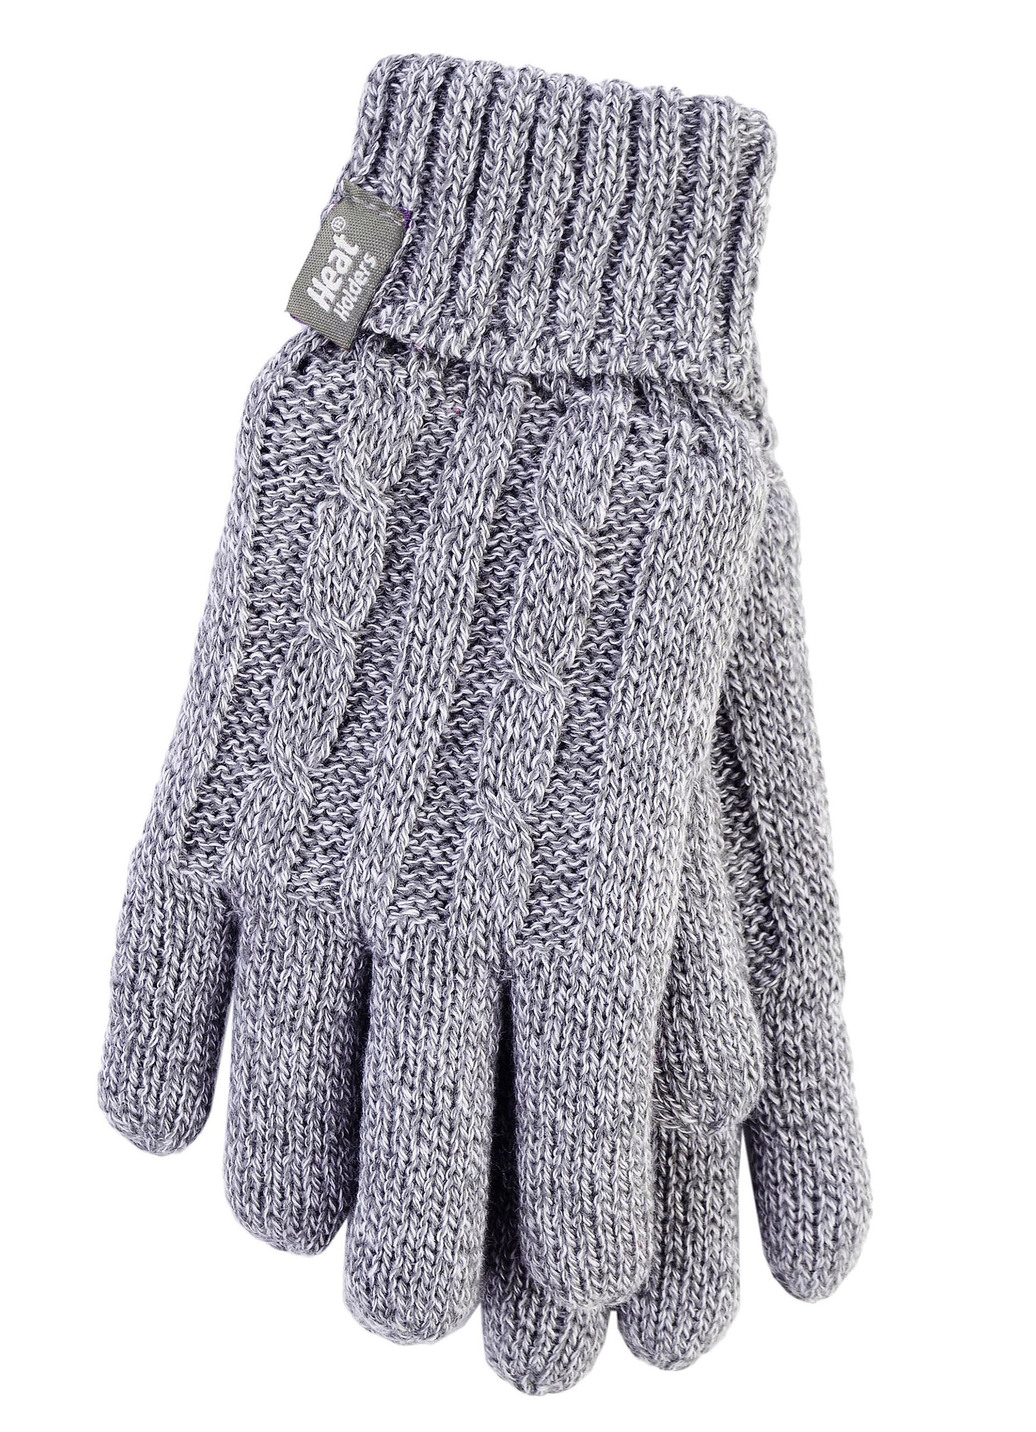 Thermo-Handschuhe von Heat Holders® für mehr Komfort im Winter, Grau, Größe 2 von BADER